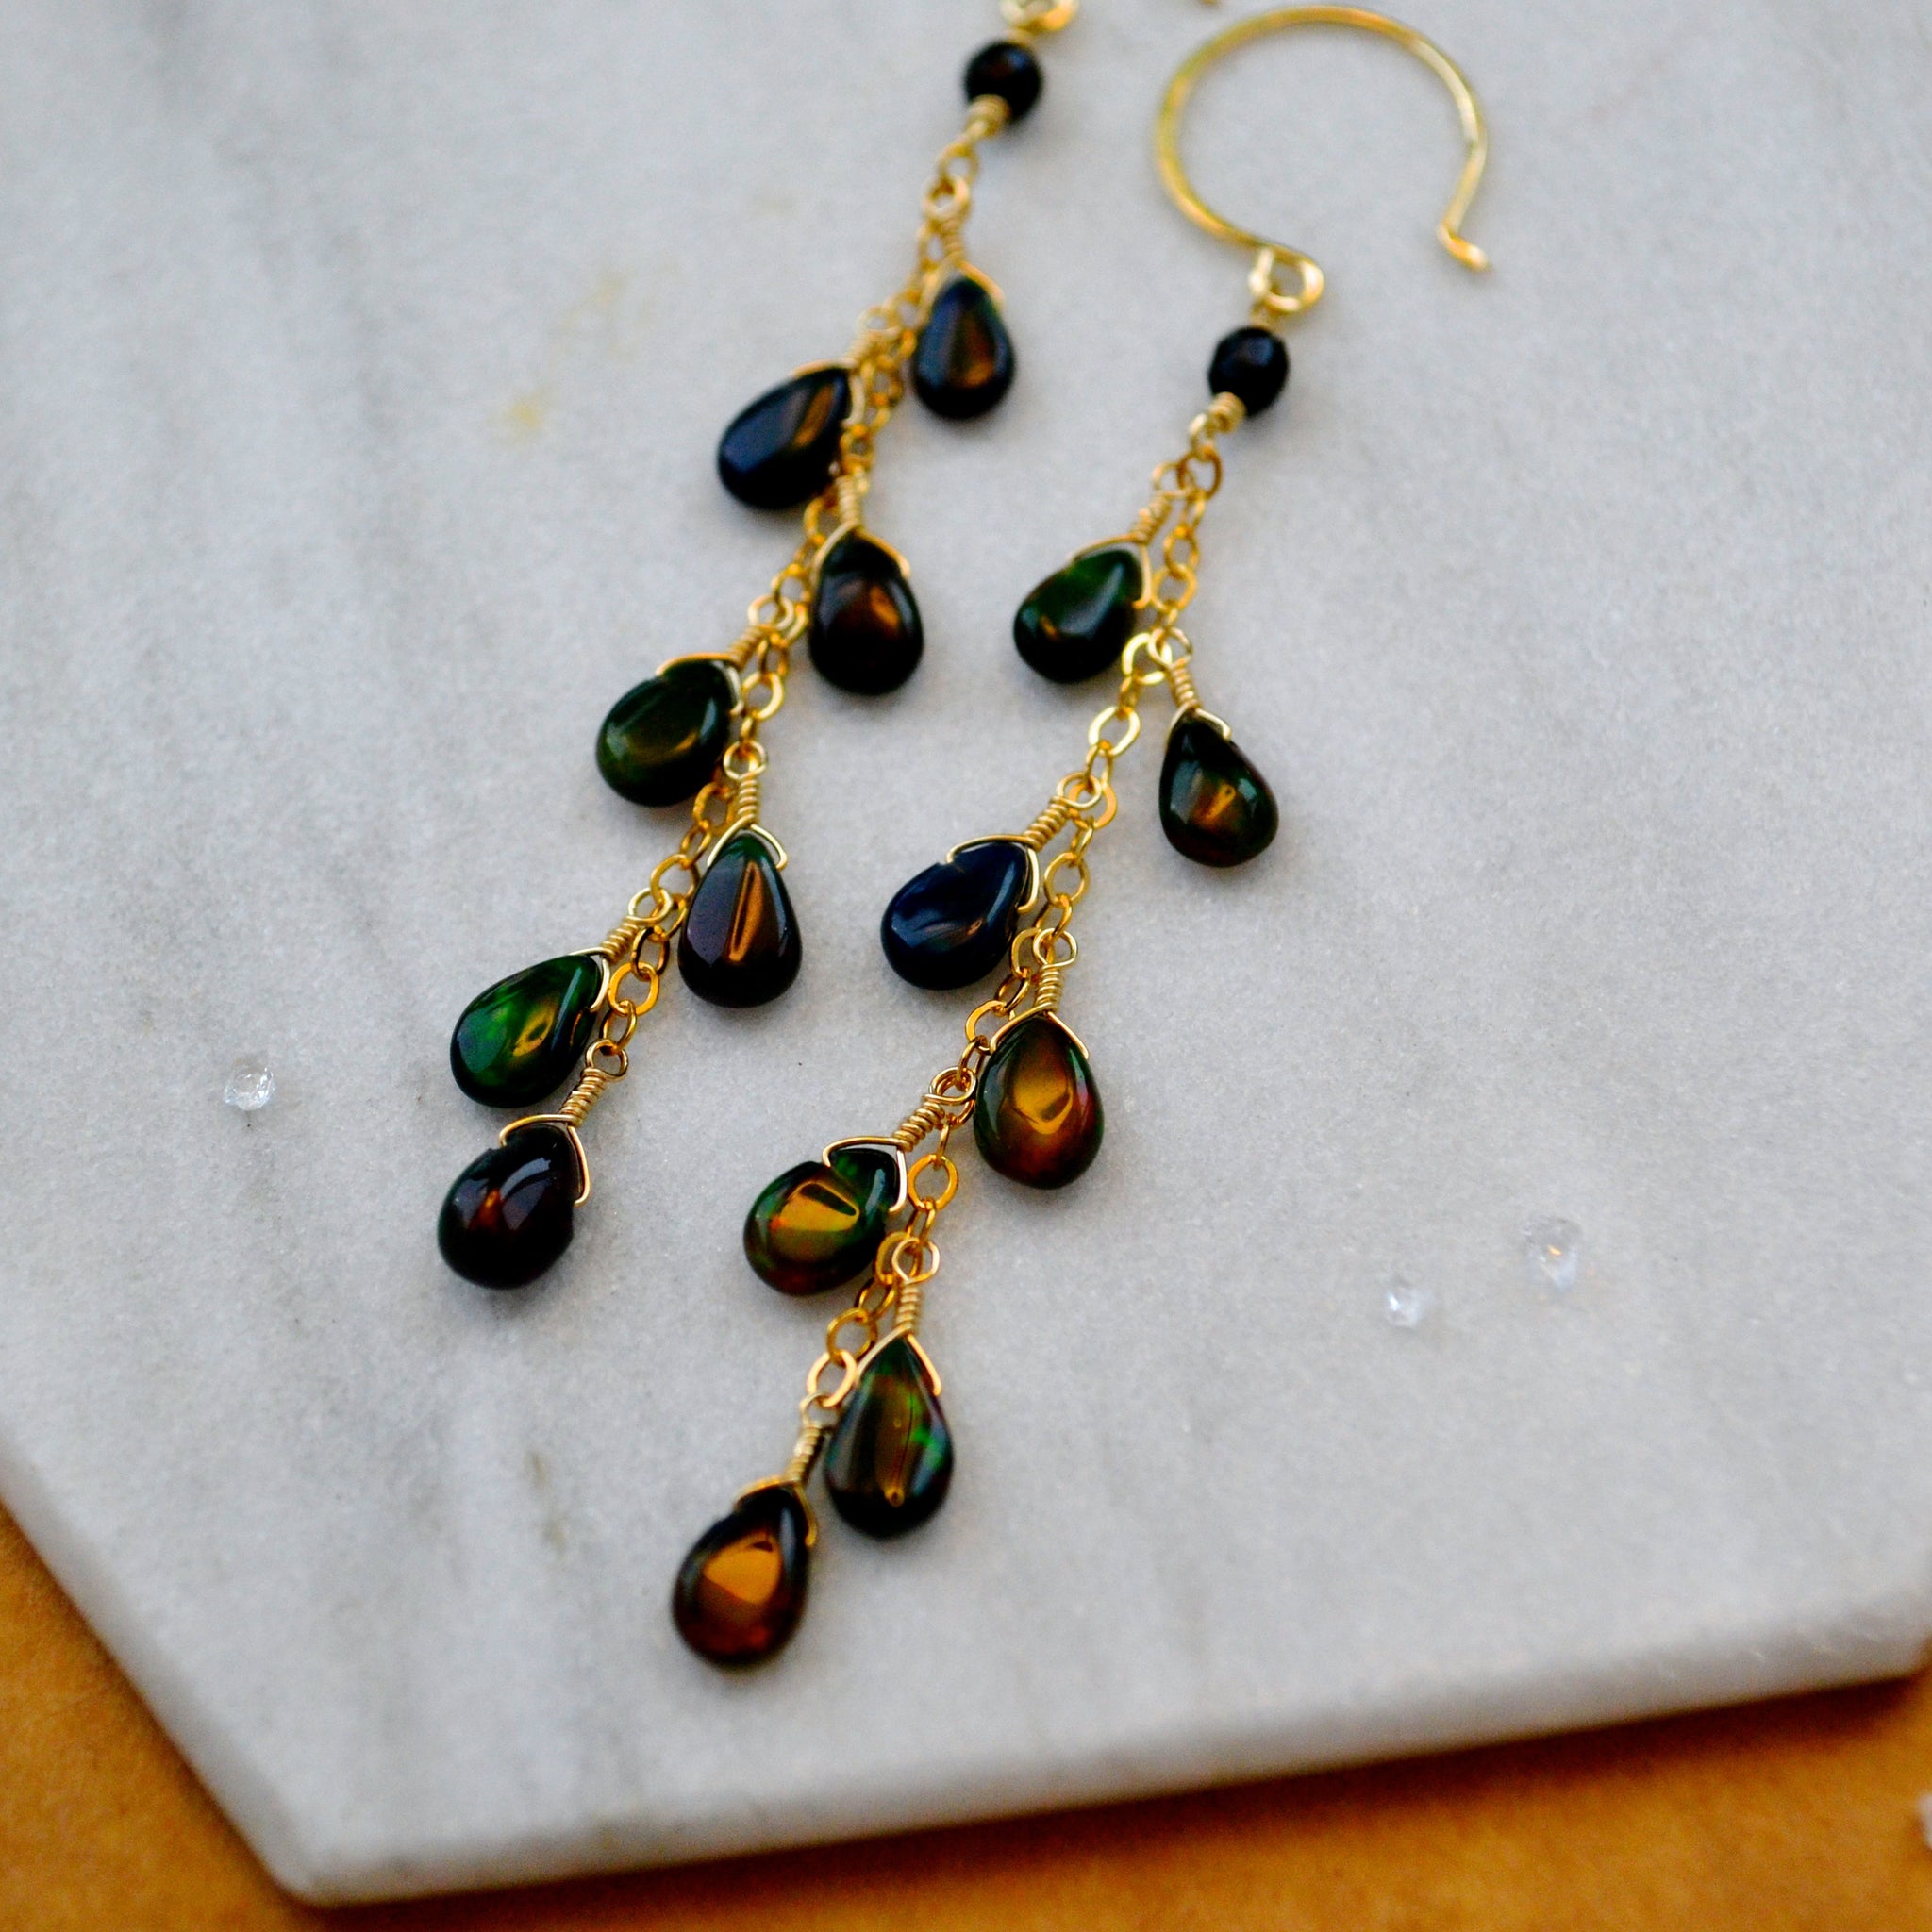 Bonfire Earrings with Black Opal long dangle earrings handmade gemstone jewelry black gem dangles sustainable jewelry detail